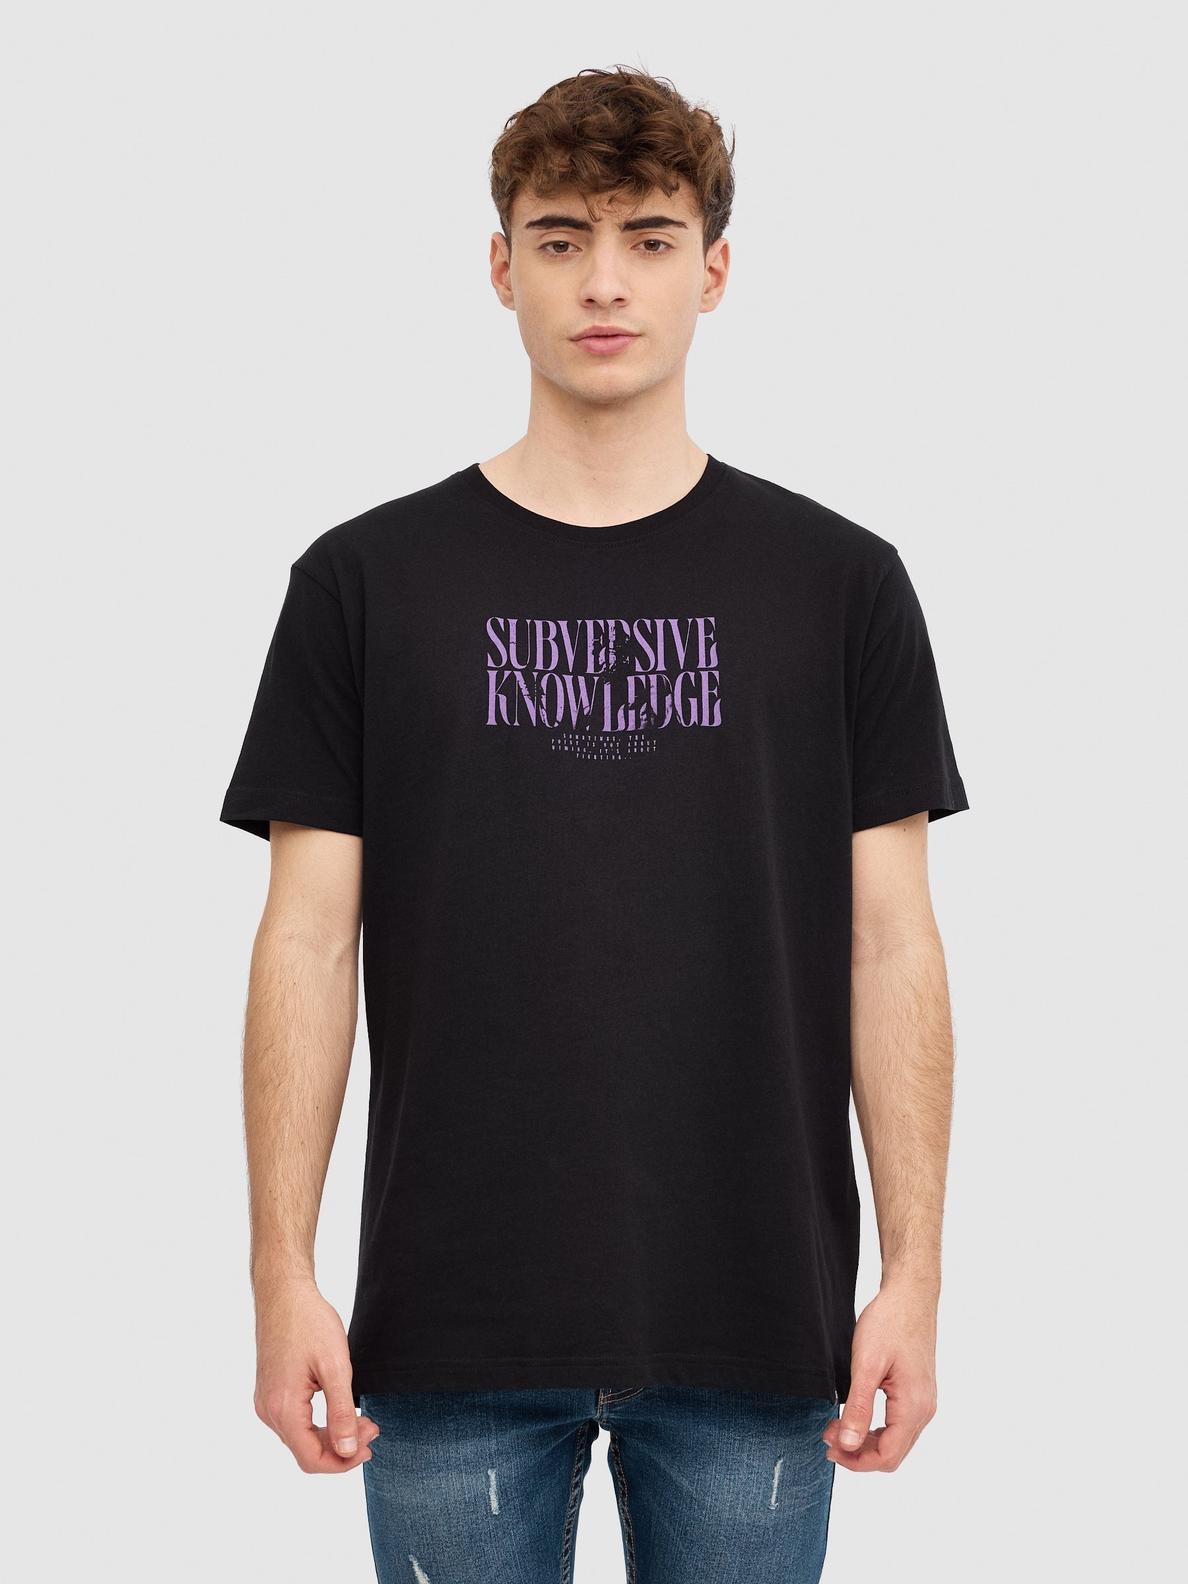 Oferta de Camiseta texto minimalista por 7,99€ en Inside